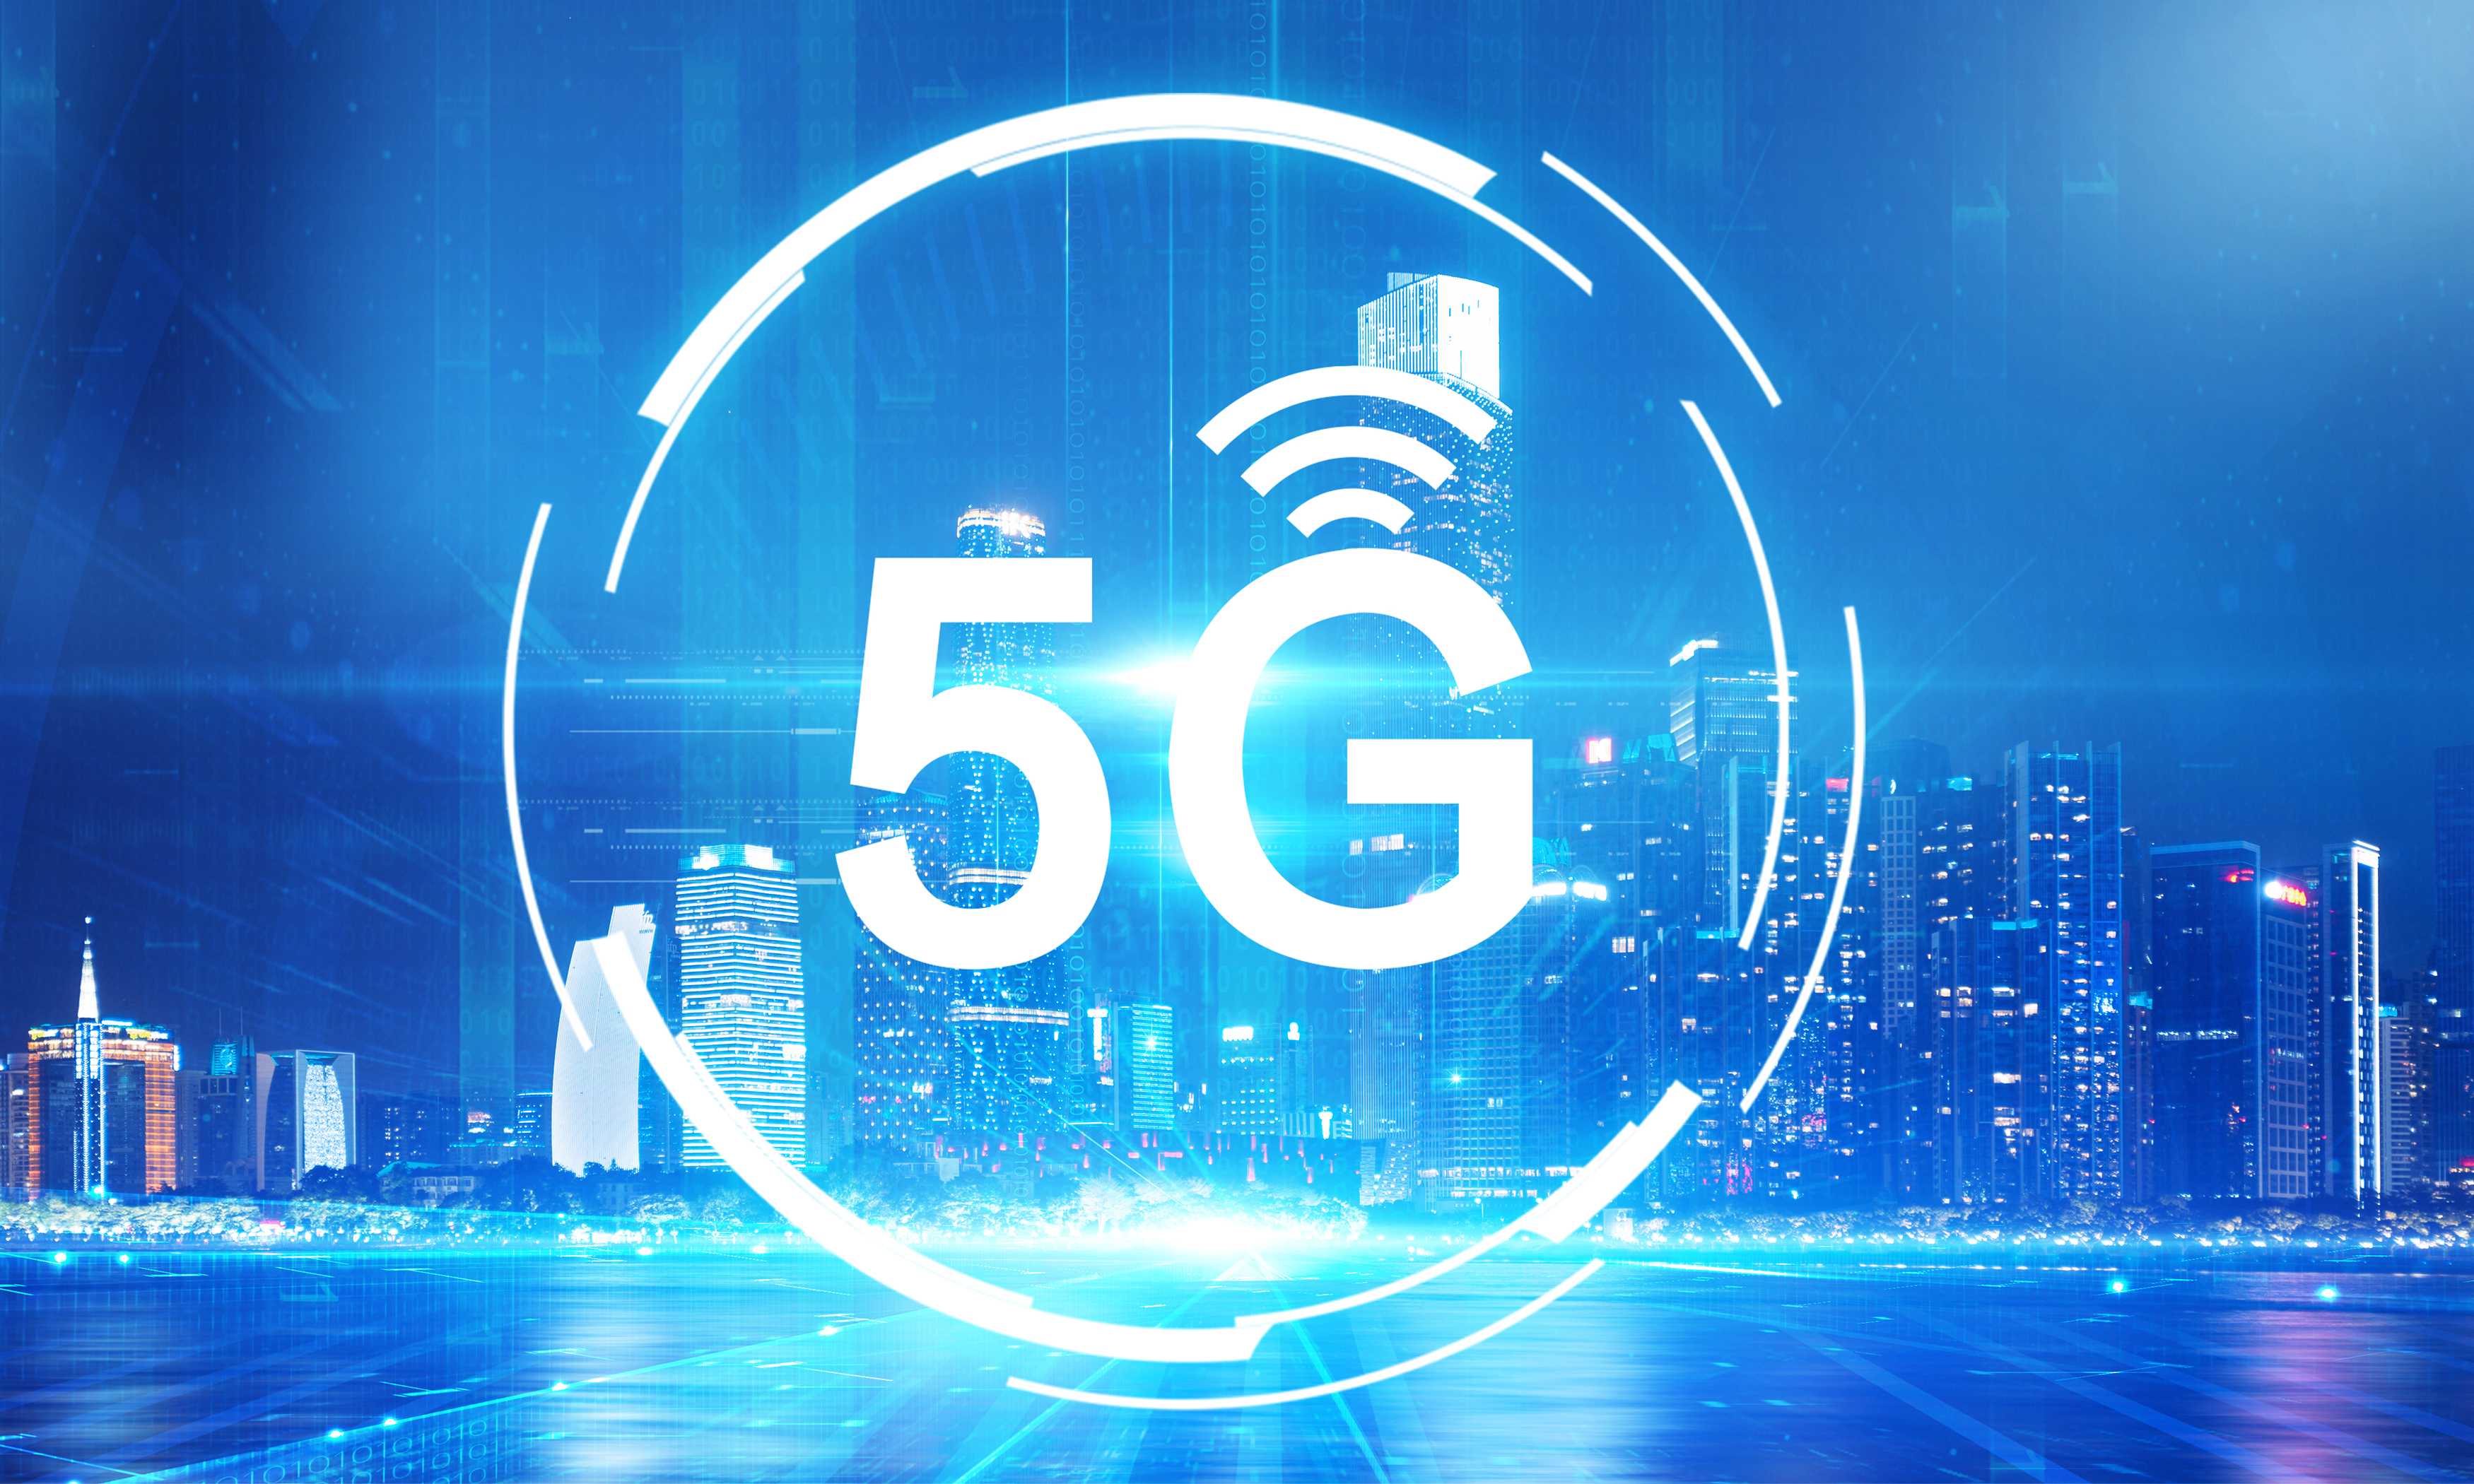 柘城的 5G 网络建设：从平凡到现代化、智能化的转型之旅  第10张